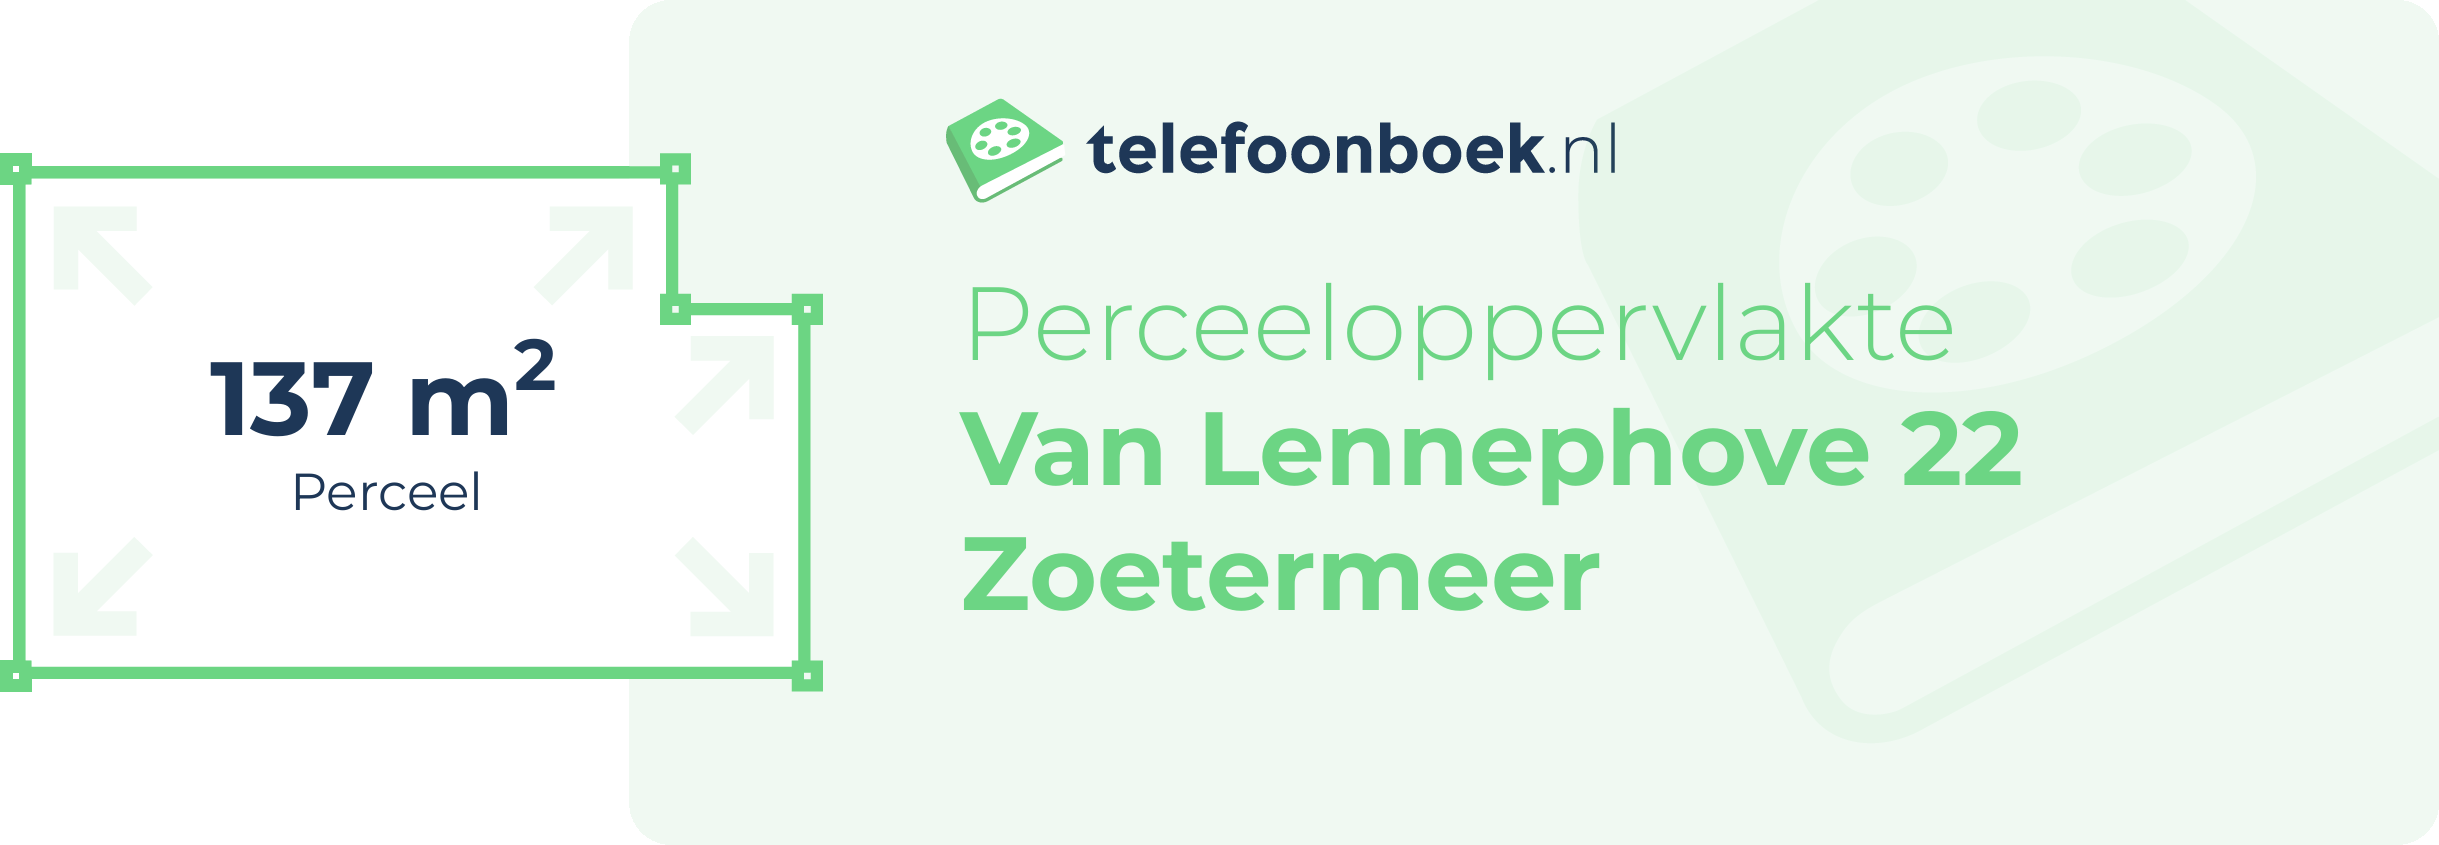 Perceeloppervlakte Van Lennephove 22 Zoetermeer